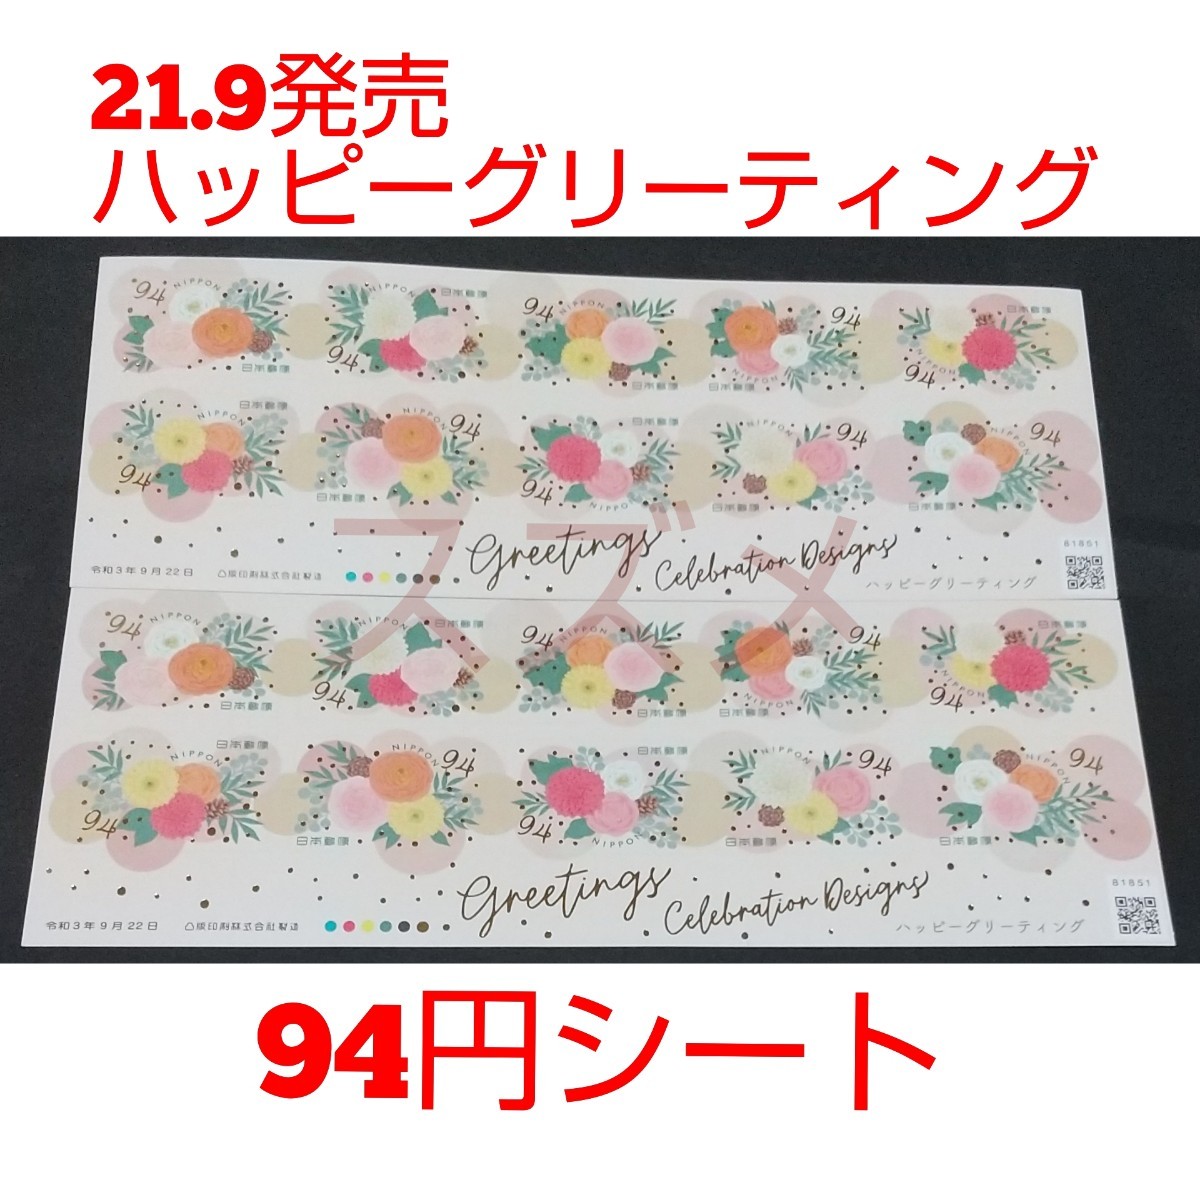 21.9発売 ハッピーグリーティング 94円 シール切手 2シート 1880円分  シール式切手 記念切手